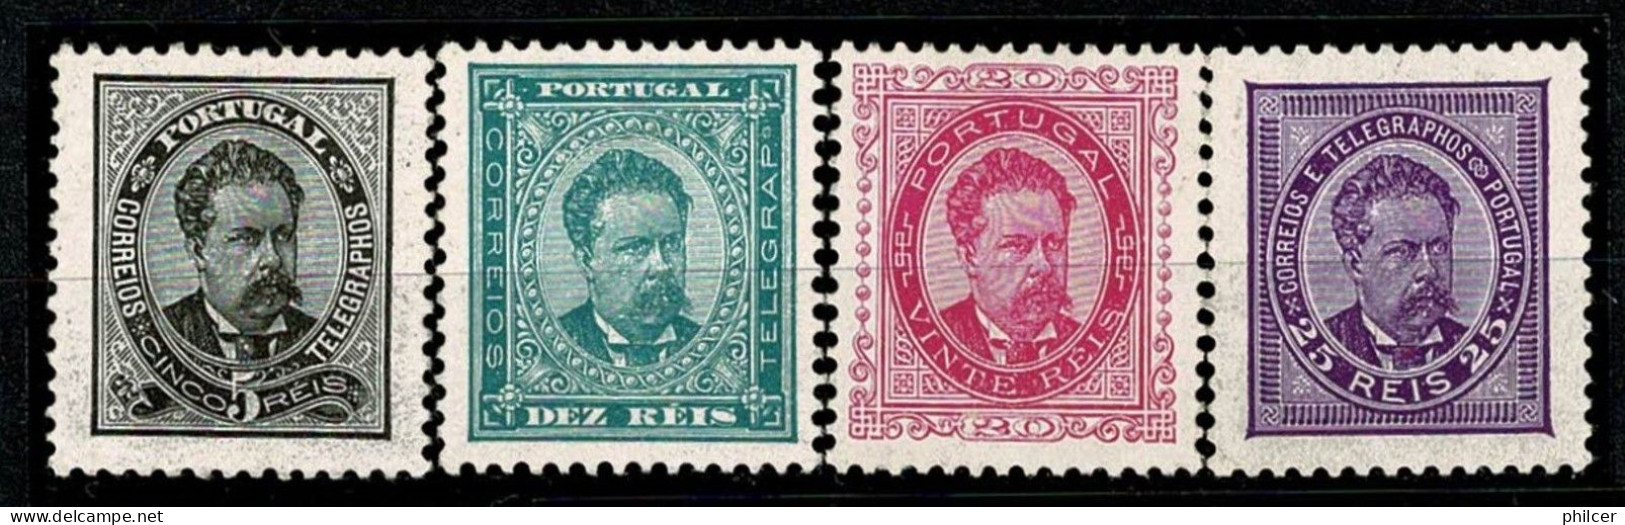 Portugal, 1884/7, # 60/3 Dent. 11 3/4, MH - Nuovi